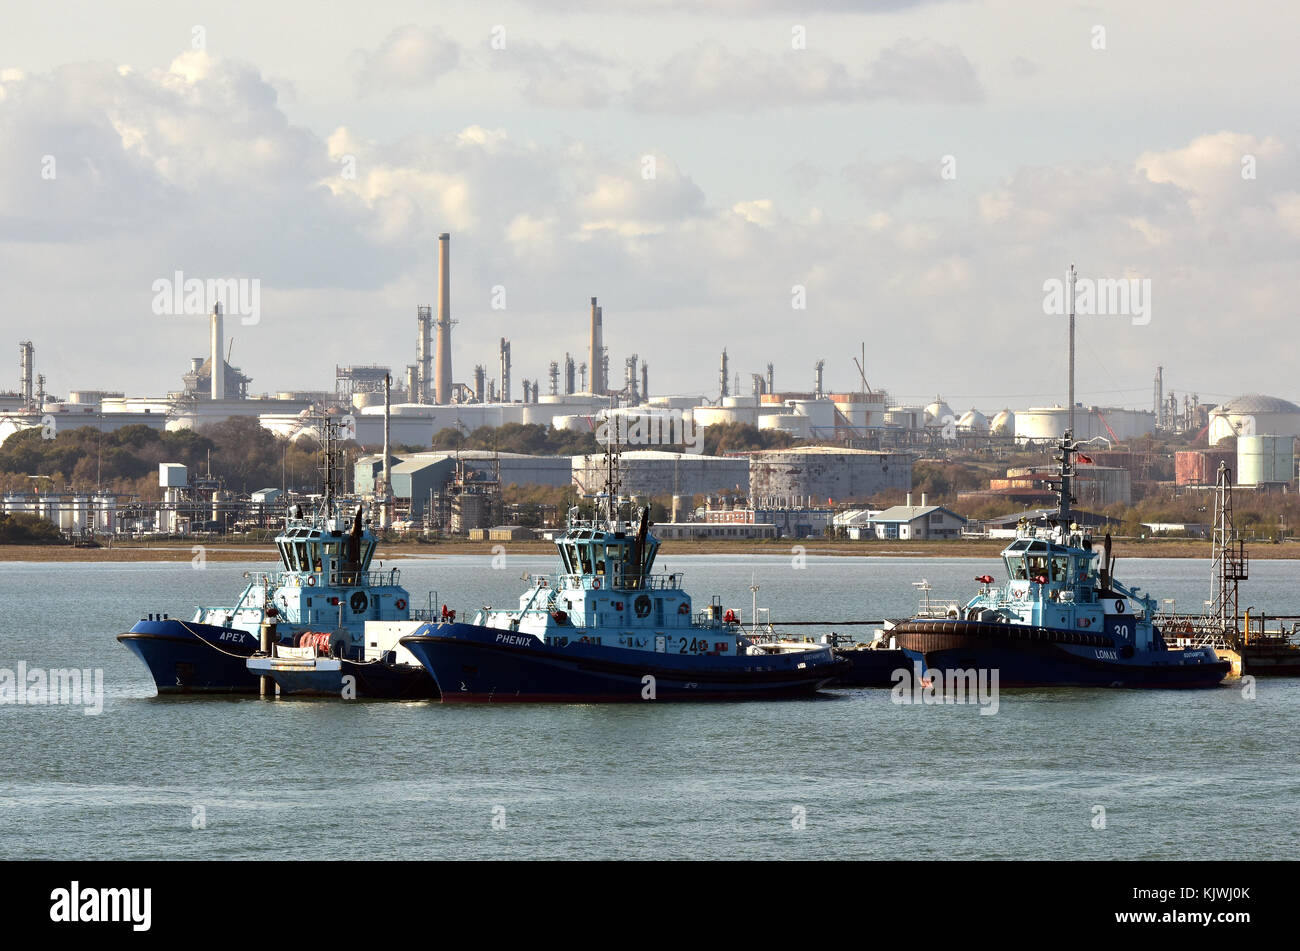 Schlepper neben Im marine Thermal in Fawley essex Öl und Gas Raffinerie am Rande der Southampton Solent Wasser. zu Lohn, der Hafen von Southampton. Stockfoto